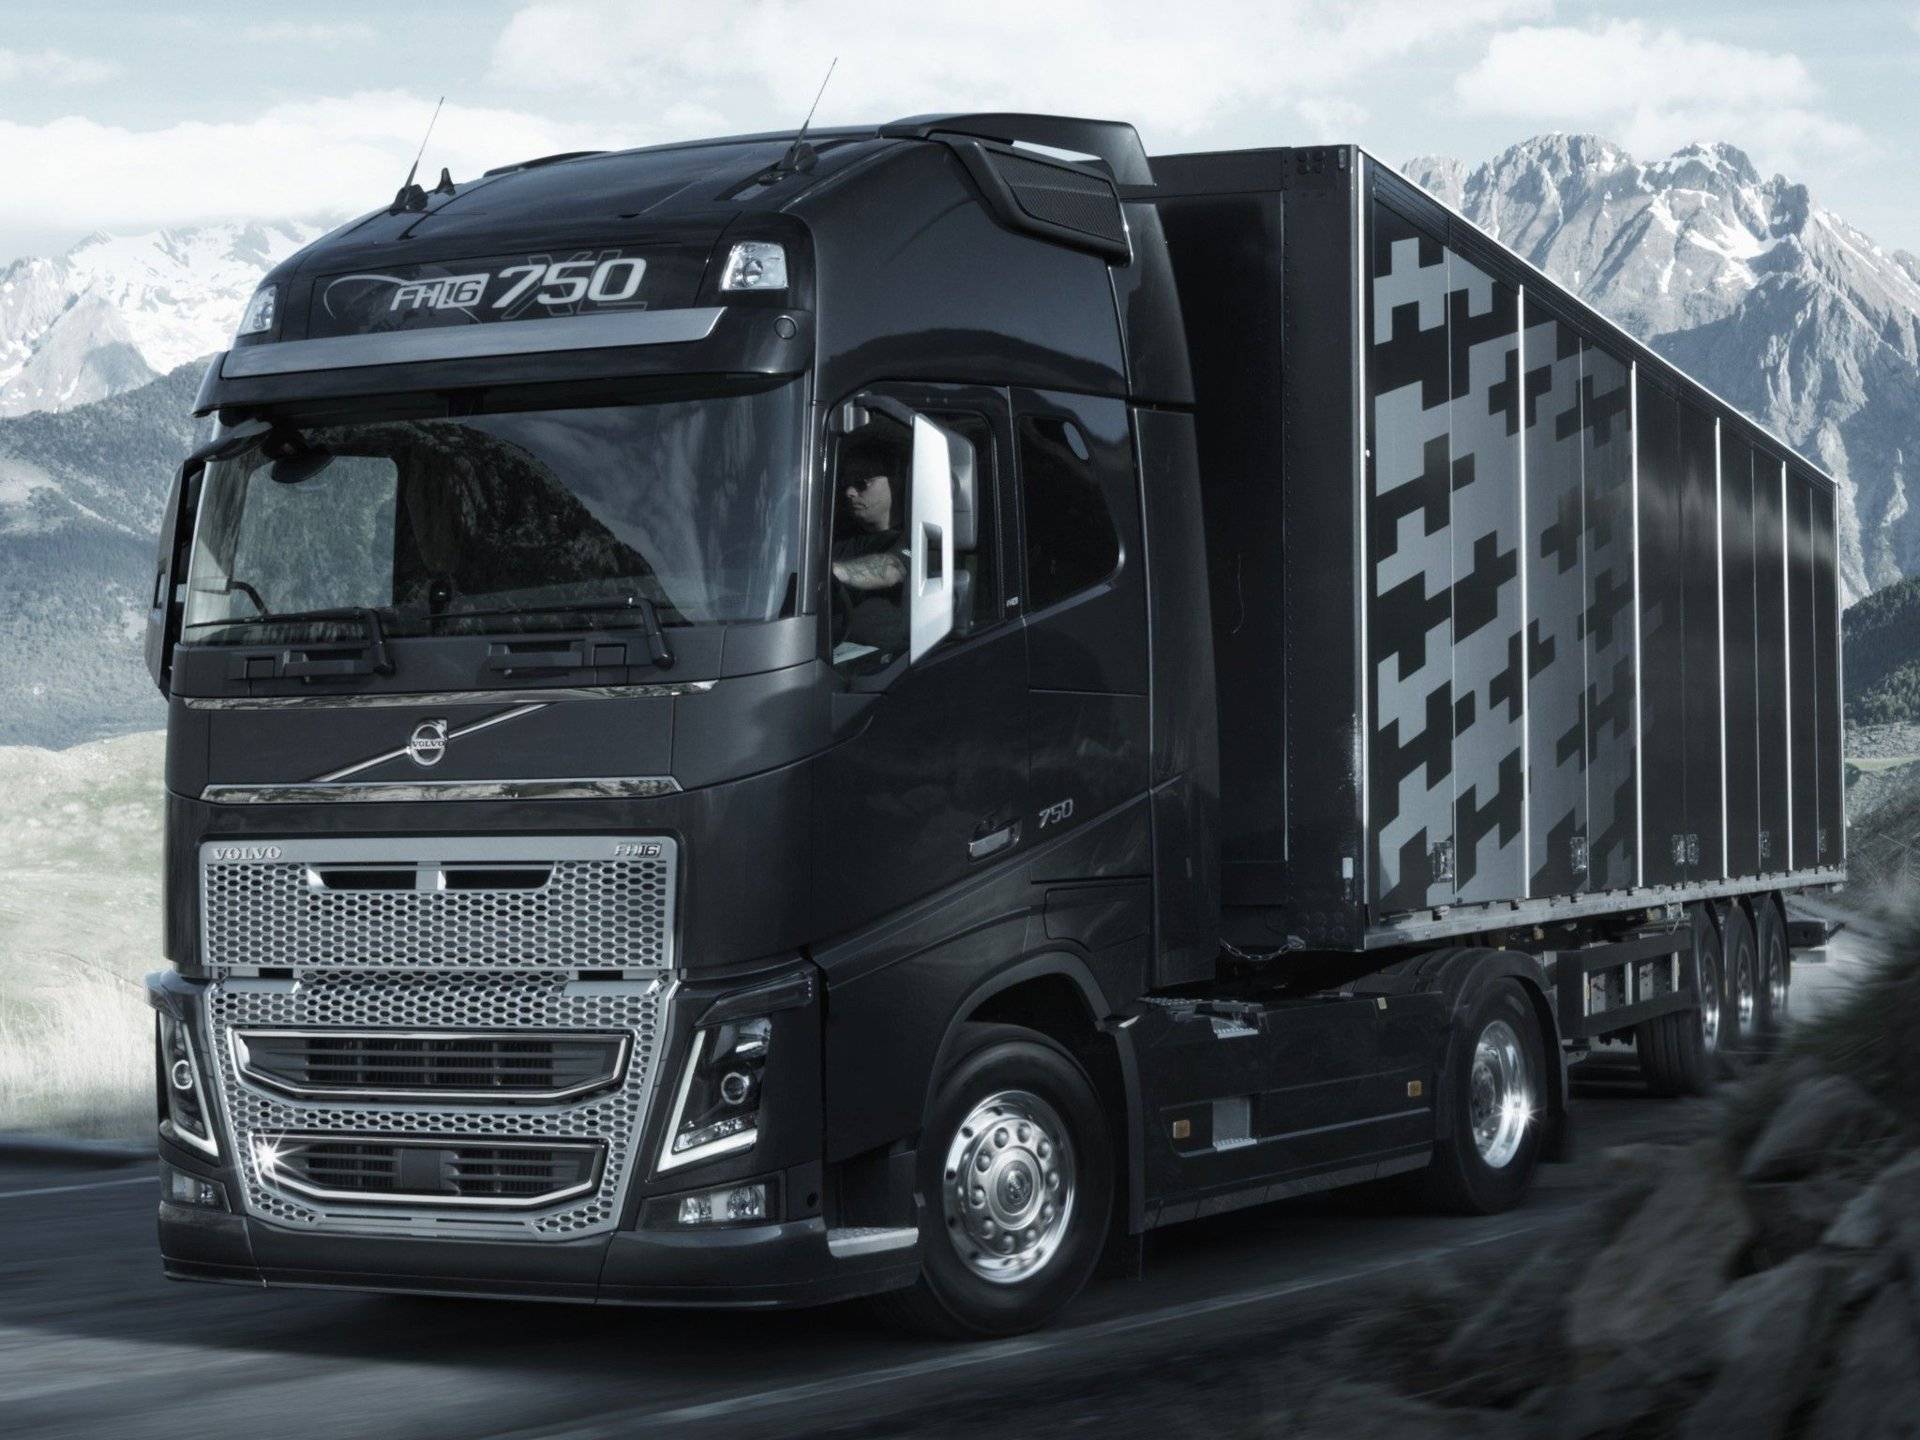 Volvo trucks представила новое поколение тяжелых грузовиков - журнал движок.